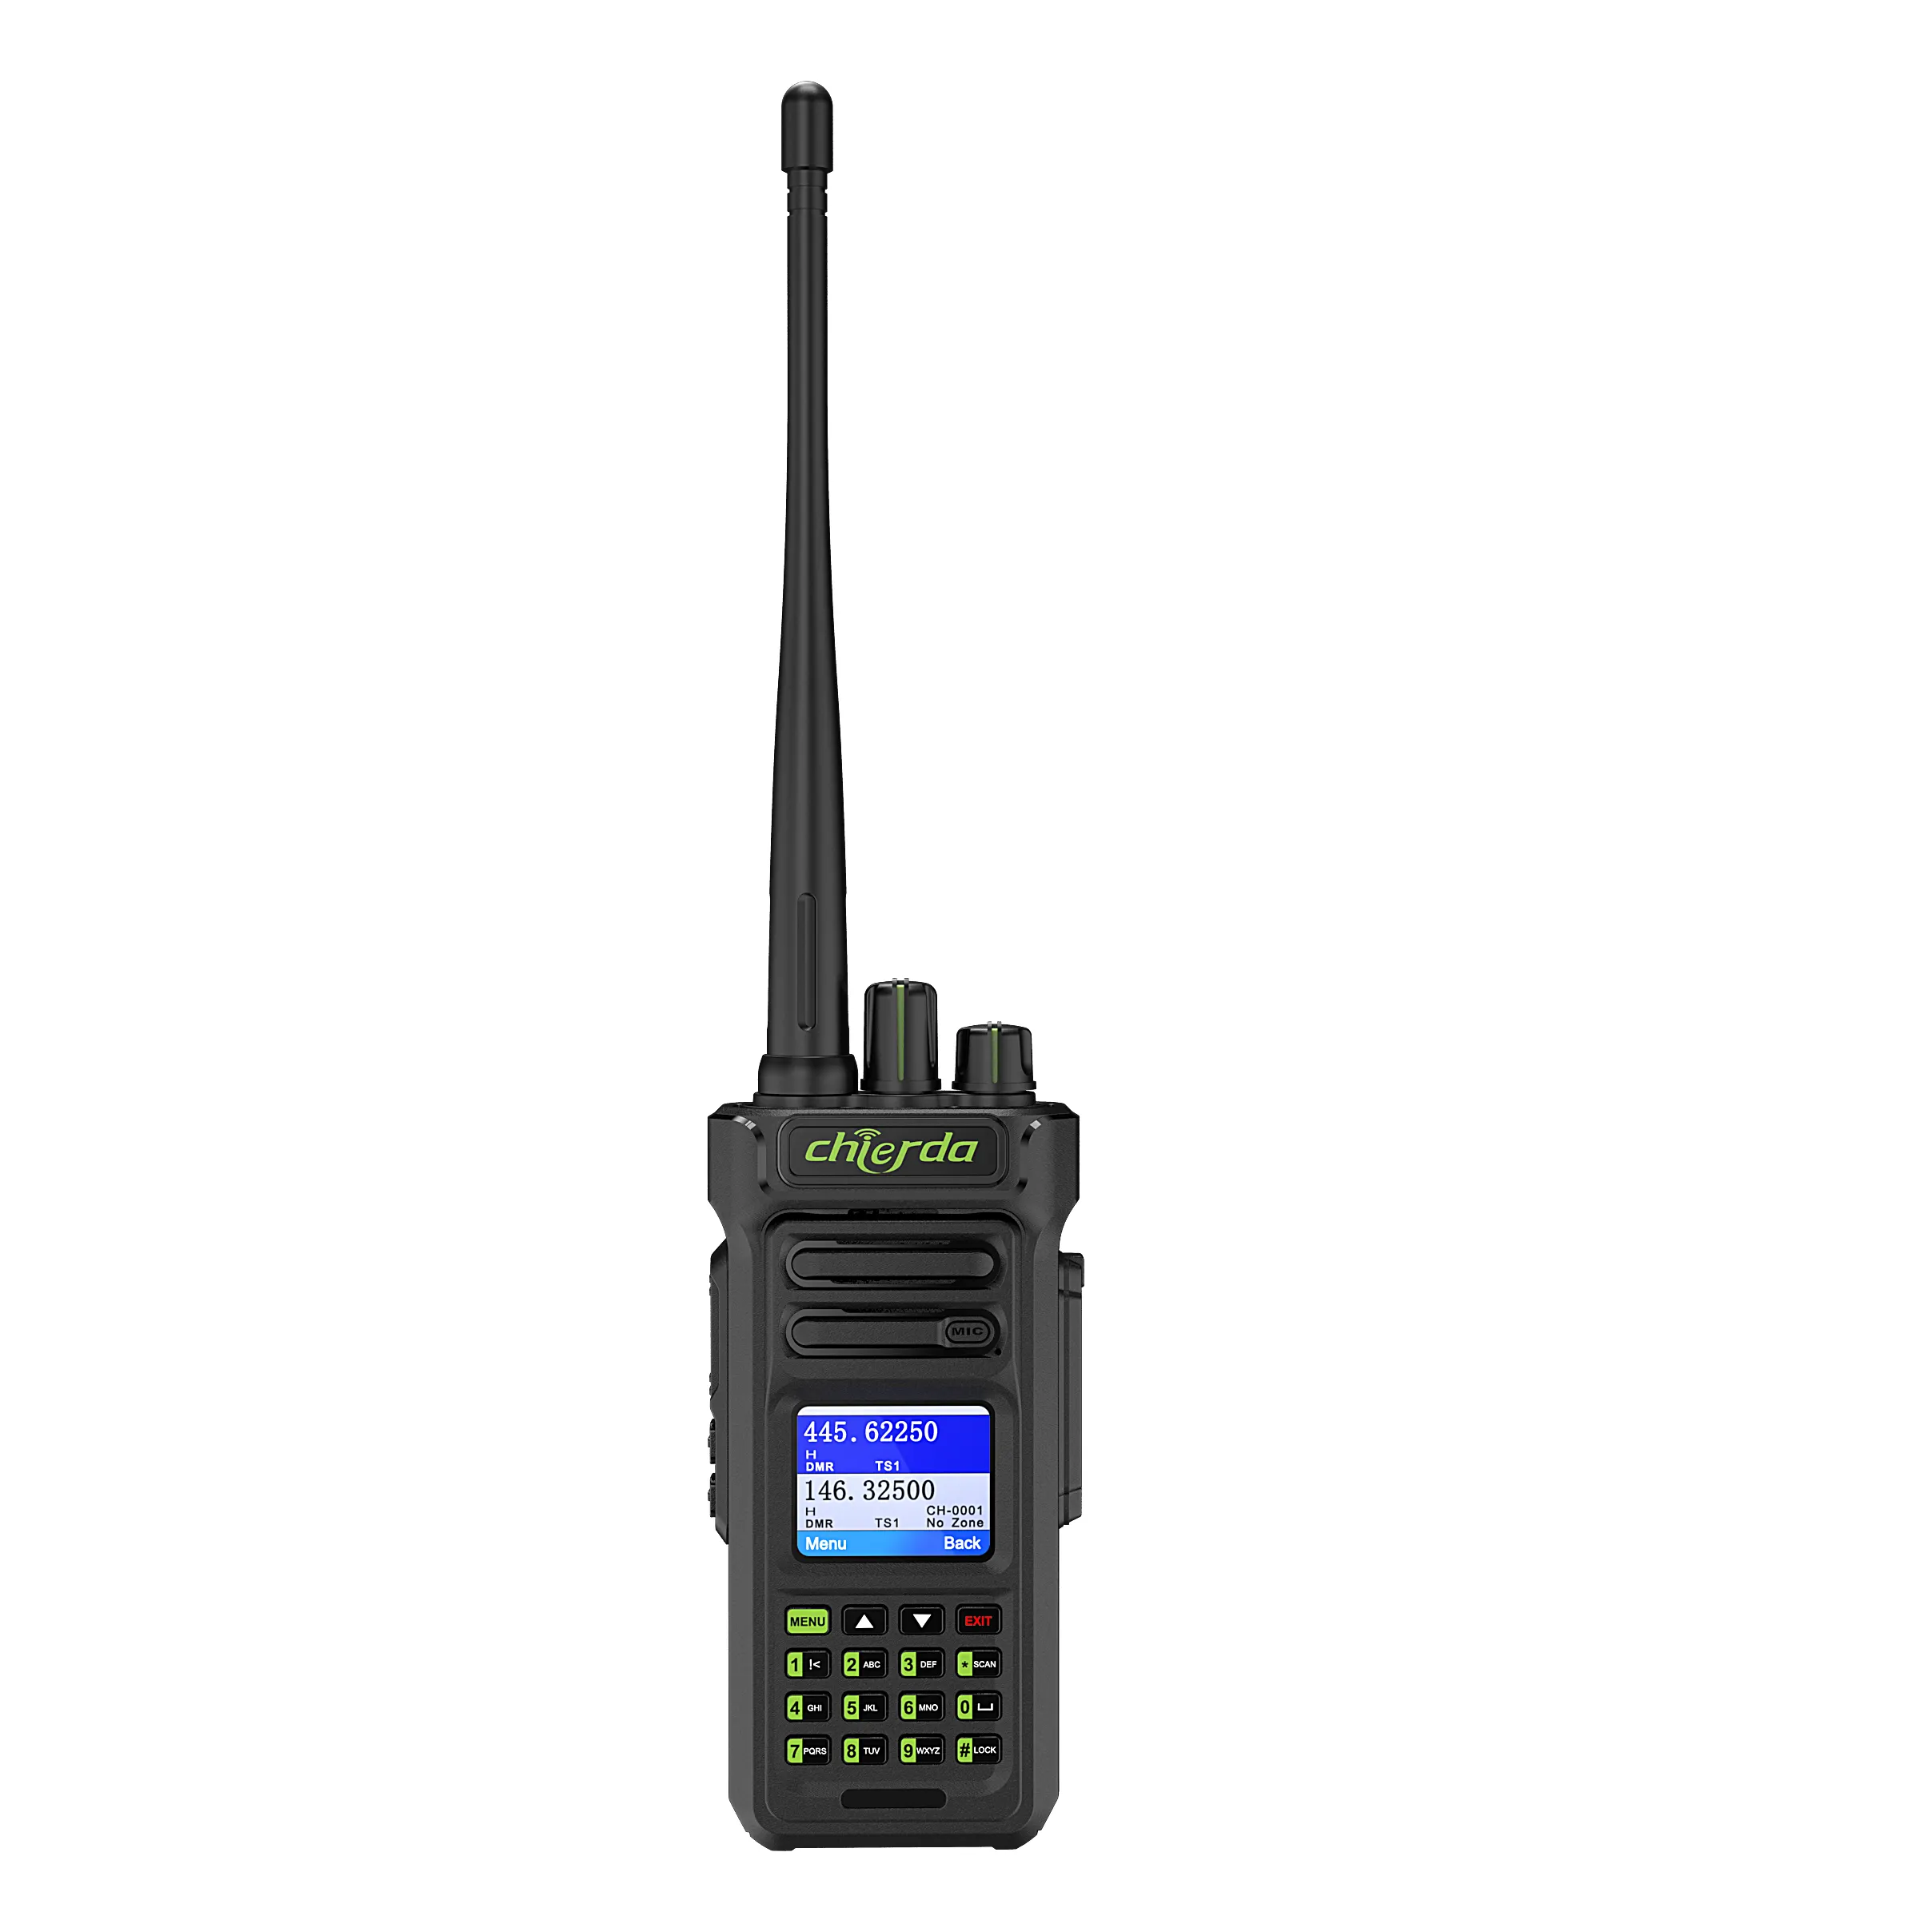 Neues Produkt Chierda D7 Amateurfunk Dmr Digitales Walkie-Talkie Vhf Uhf Transceiver Walkie Talkie GPS-Kommunikation radios